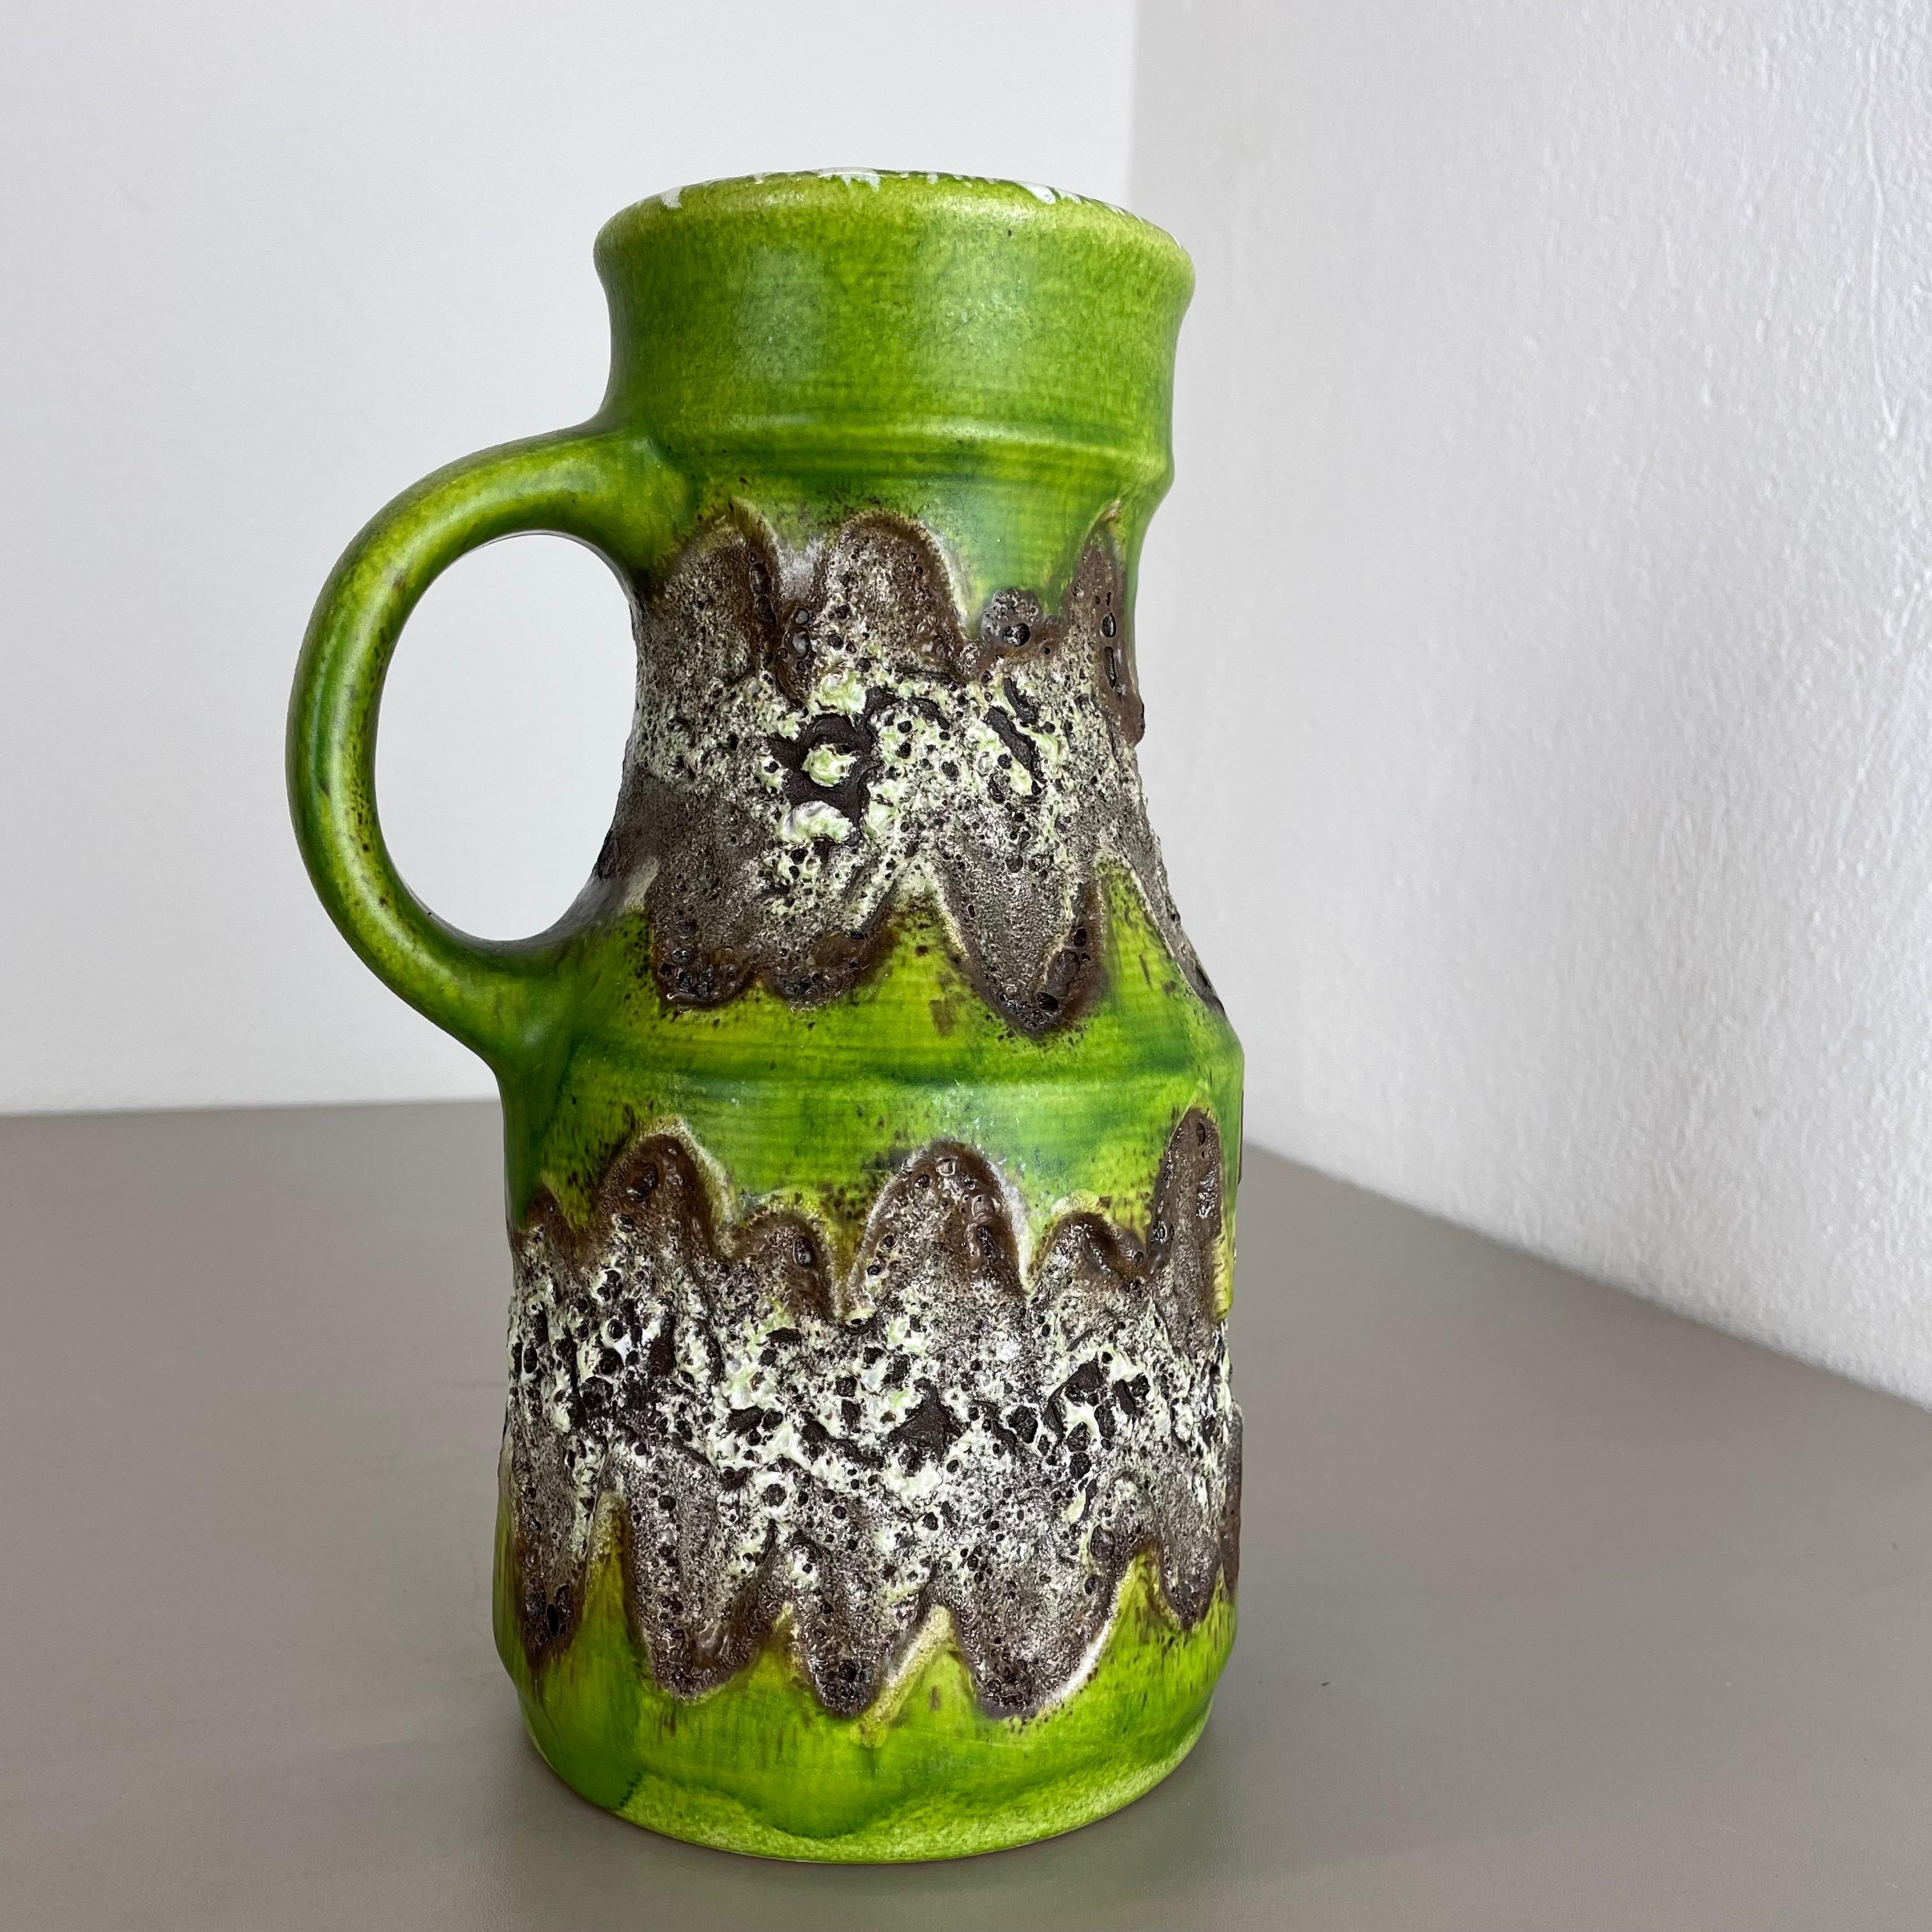 Rare Green Brutalist Fat Lava Ceramic Vases by Dümler and Breiden Germany, 1970s For Sale 13